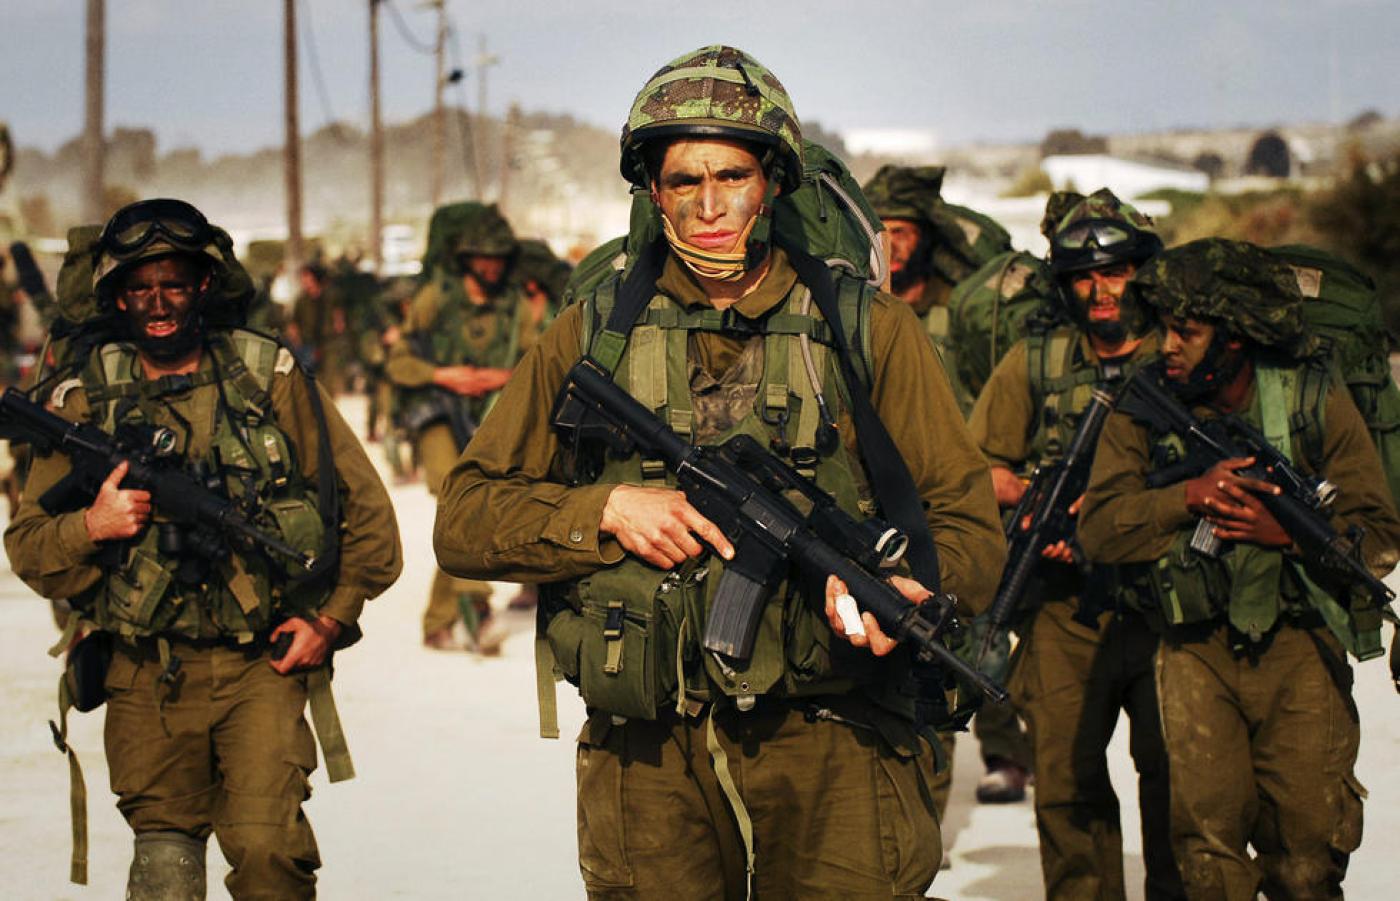 Des soldats israéliens munis d’armes de fabrication américaine lors de la guerre de Gaza en 2014 (AFP)